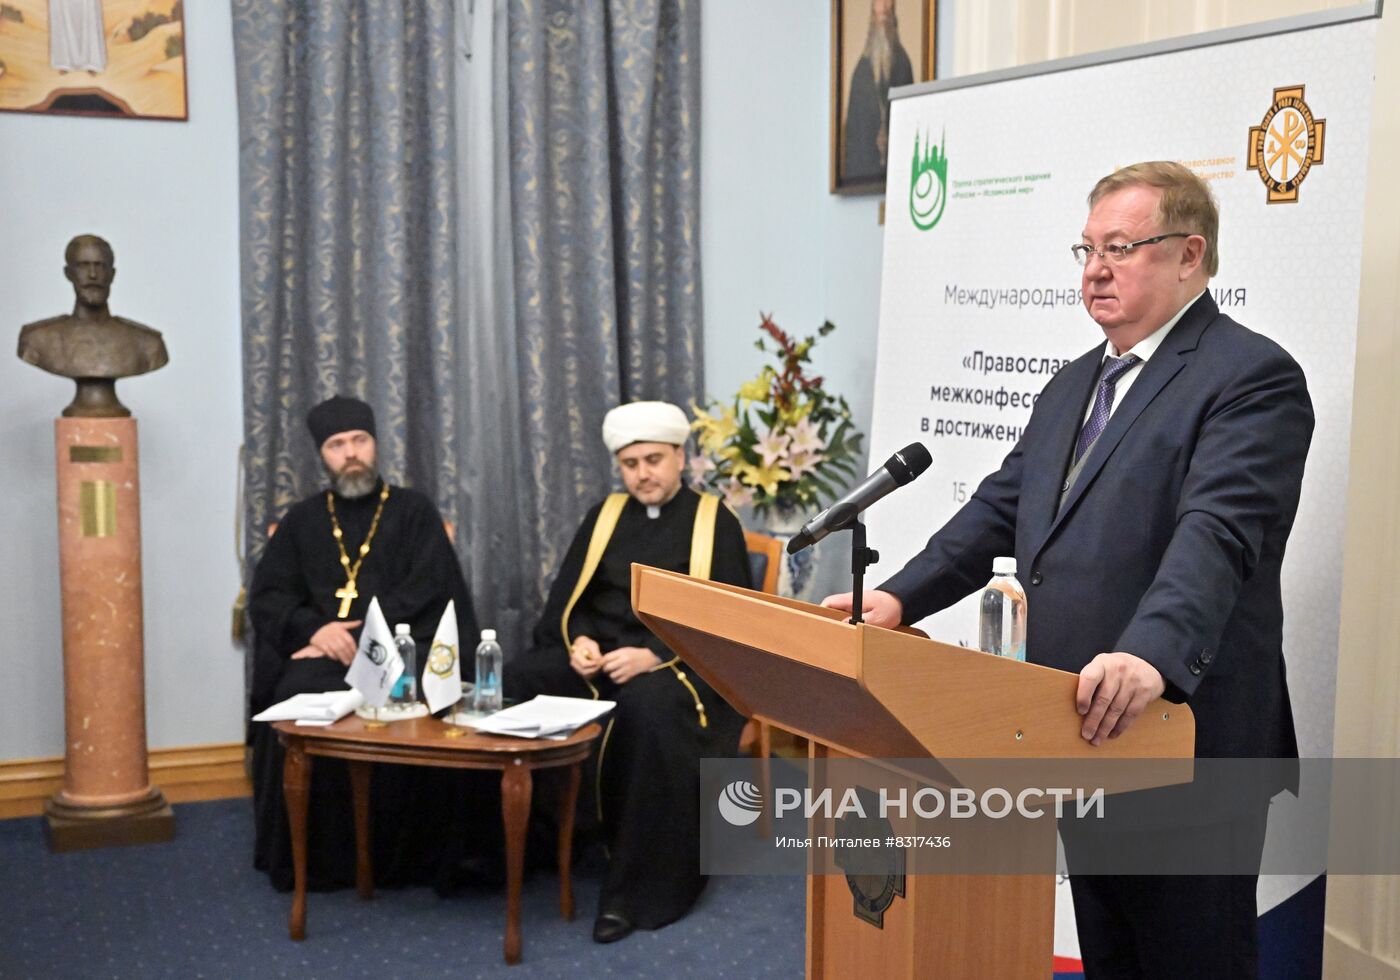 Международная конференция "Православие и ислам - межконфессиональный диалог в достижении глобального мира"